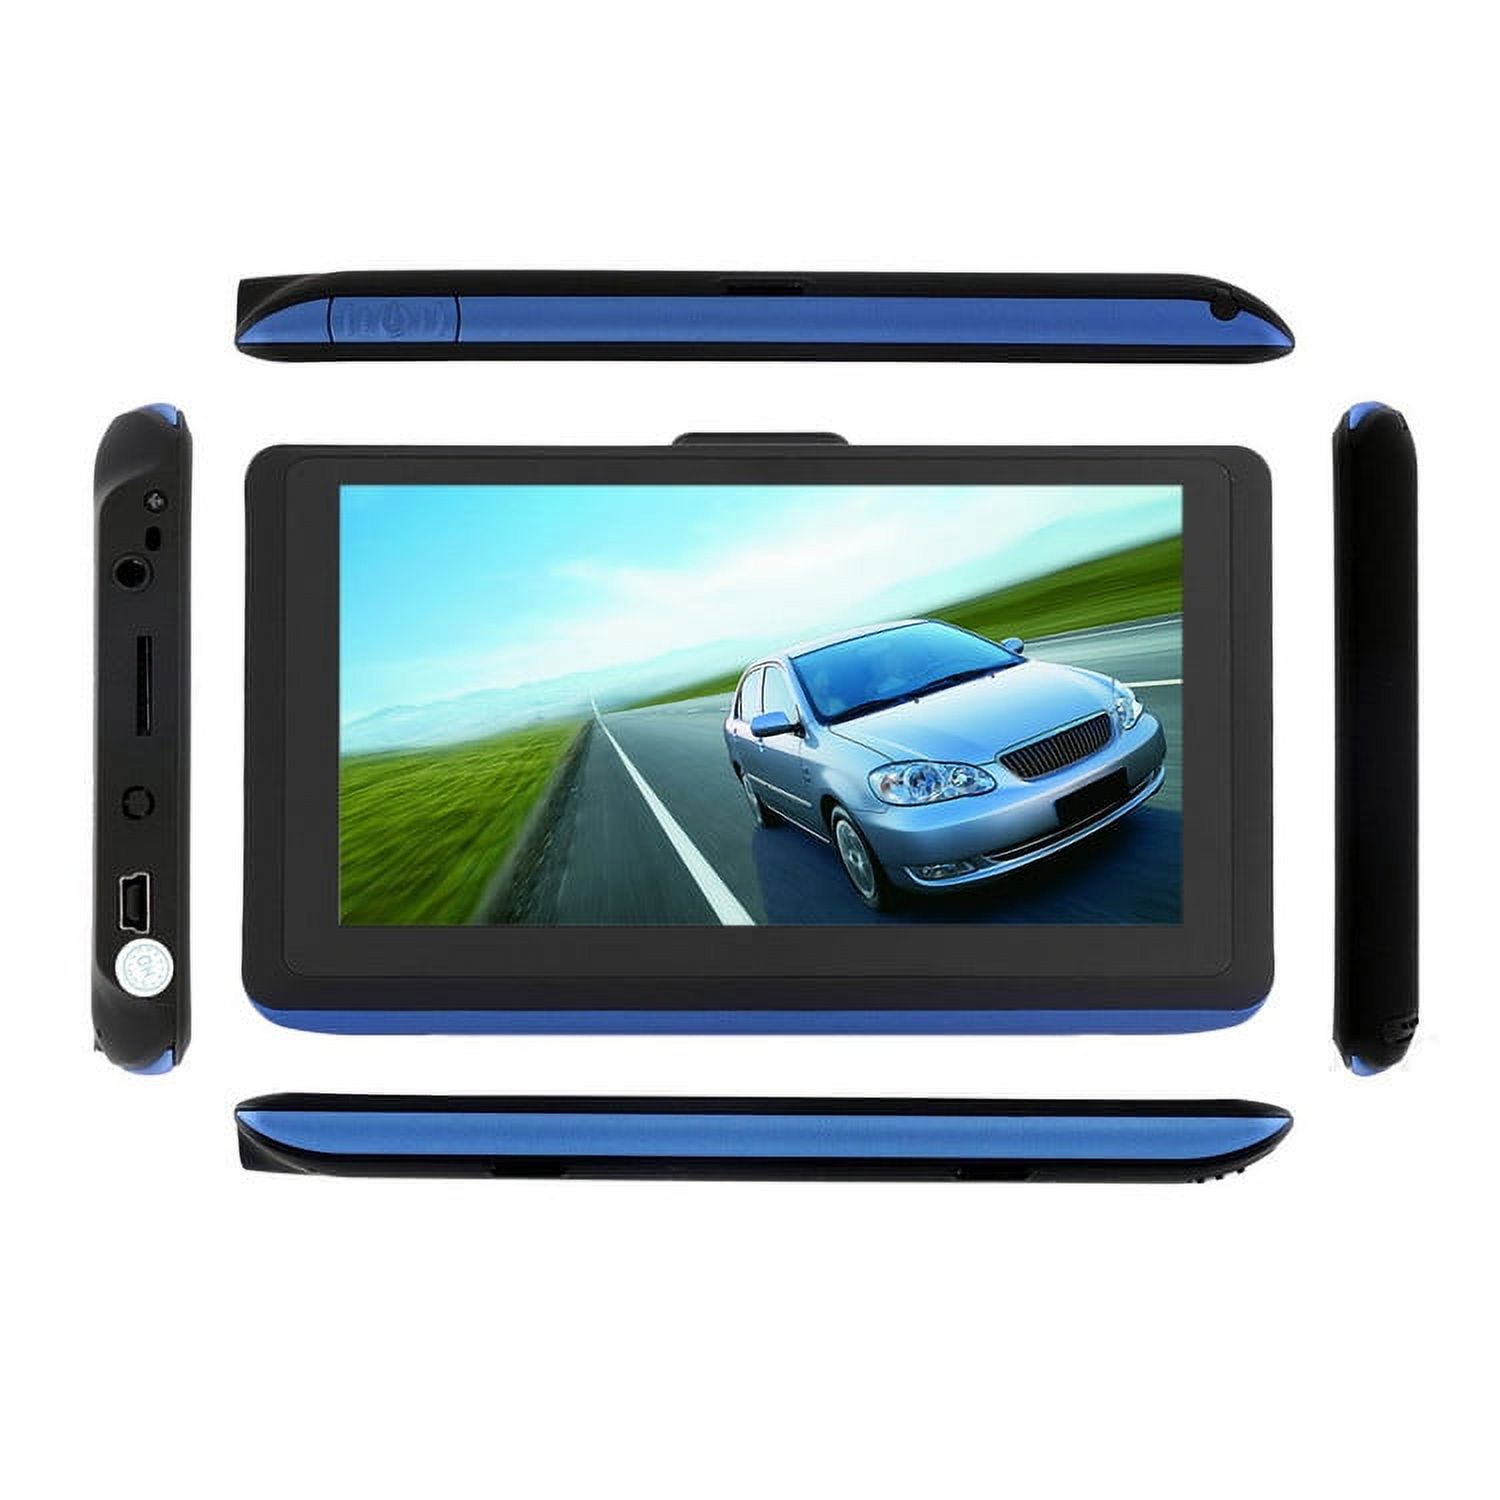 TFT LCD Display car gps navigation 5"Car Truck GPS Navigation - image 3 of 5